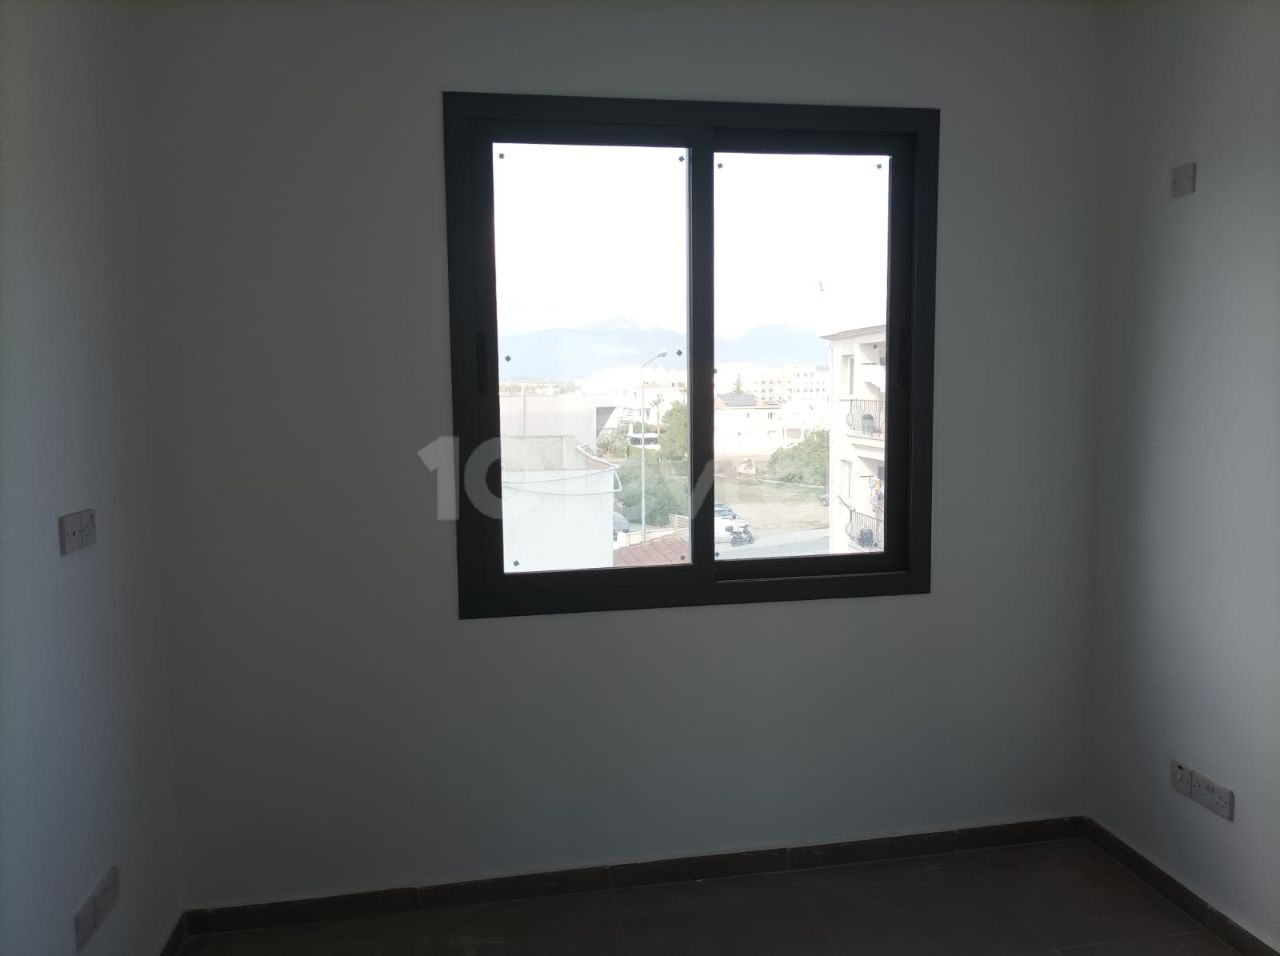 Investitionsmöglichkeit in Wohnungen im Küçük Kaymaklı-Gebiet mit 2+1 90 m² großen Innen- und Außenparkplätzen mit Aufzug